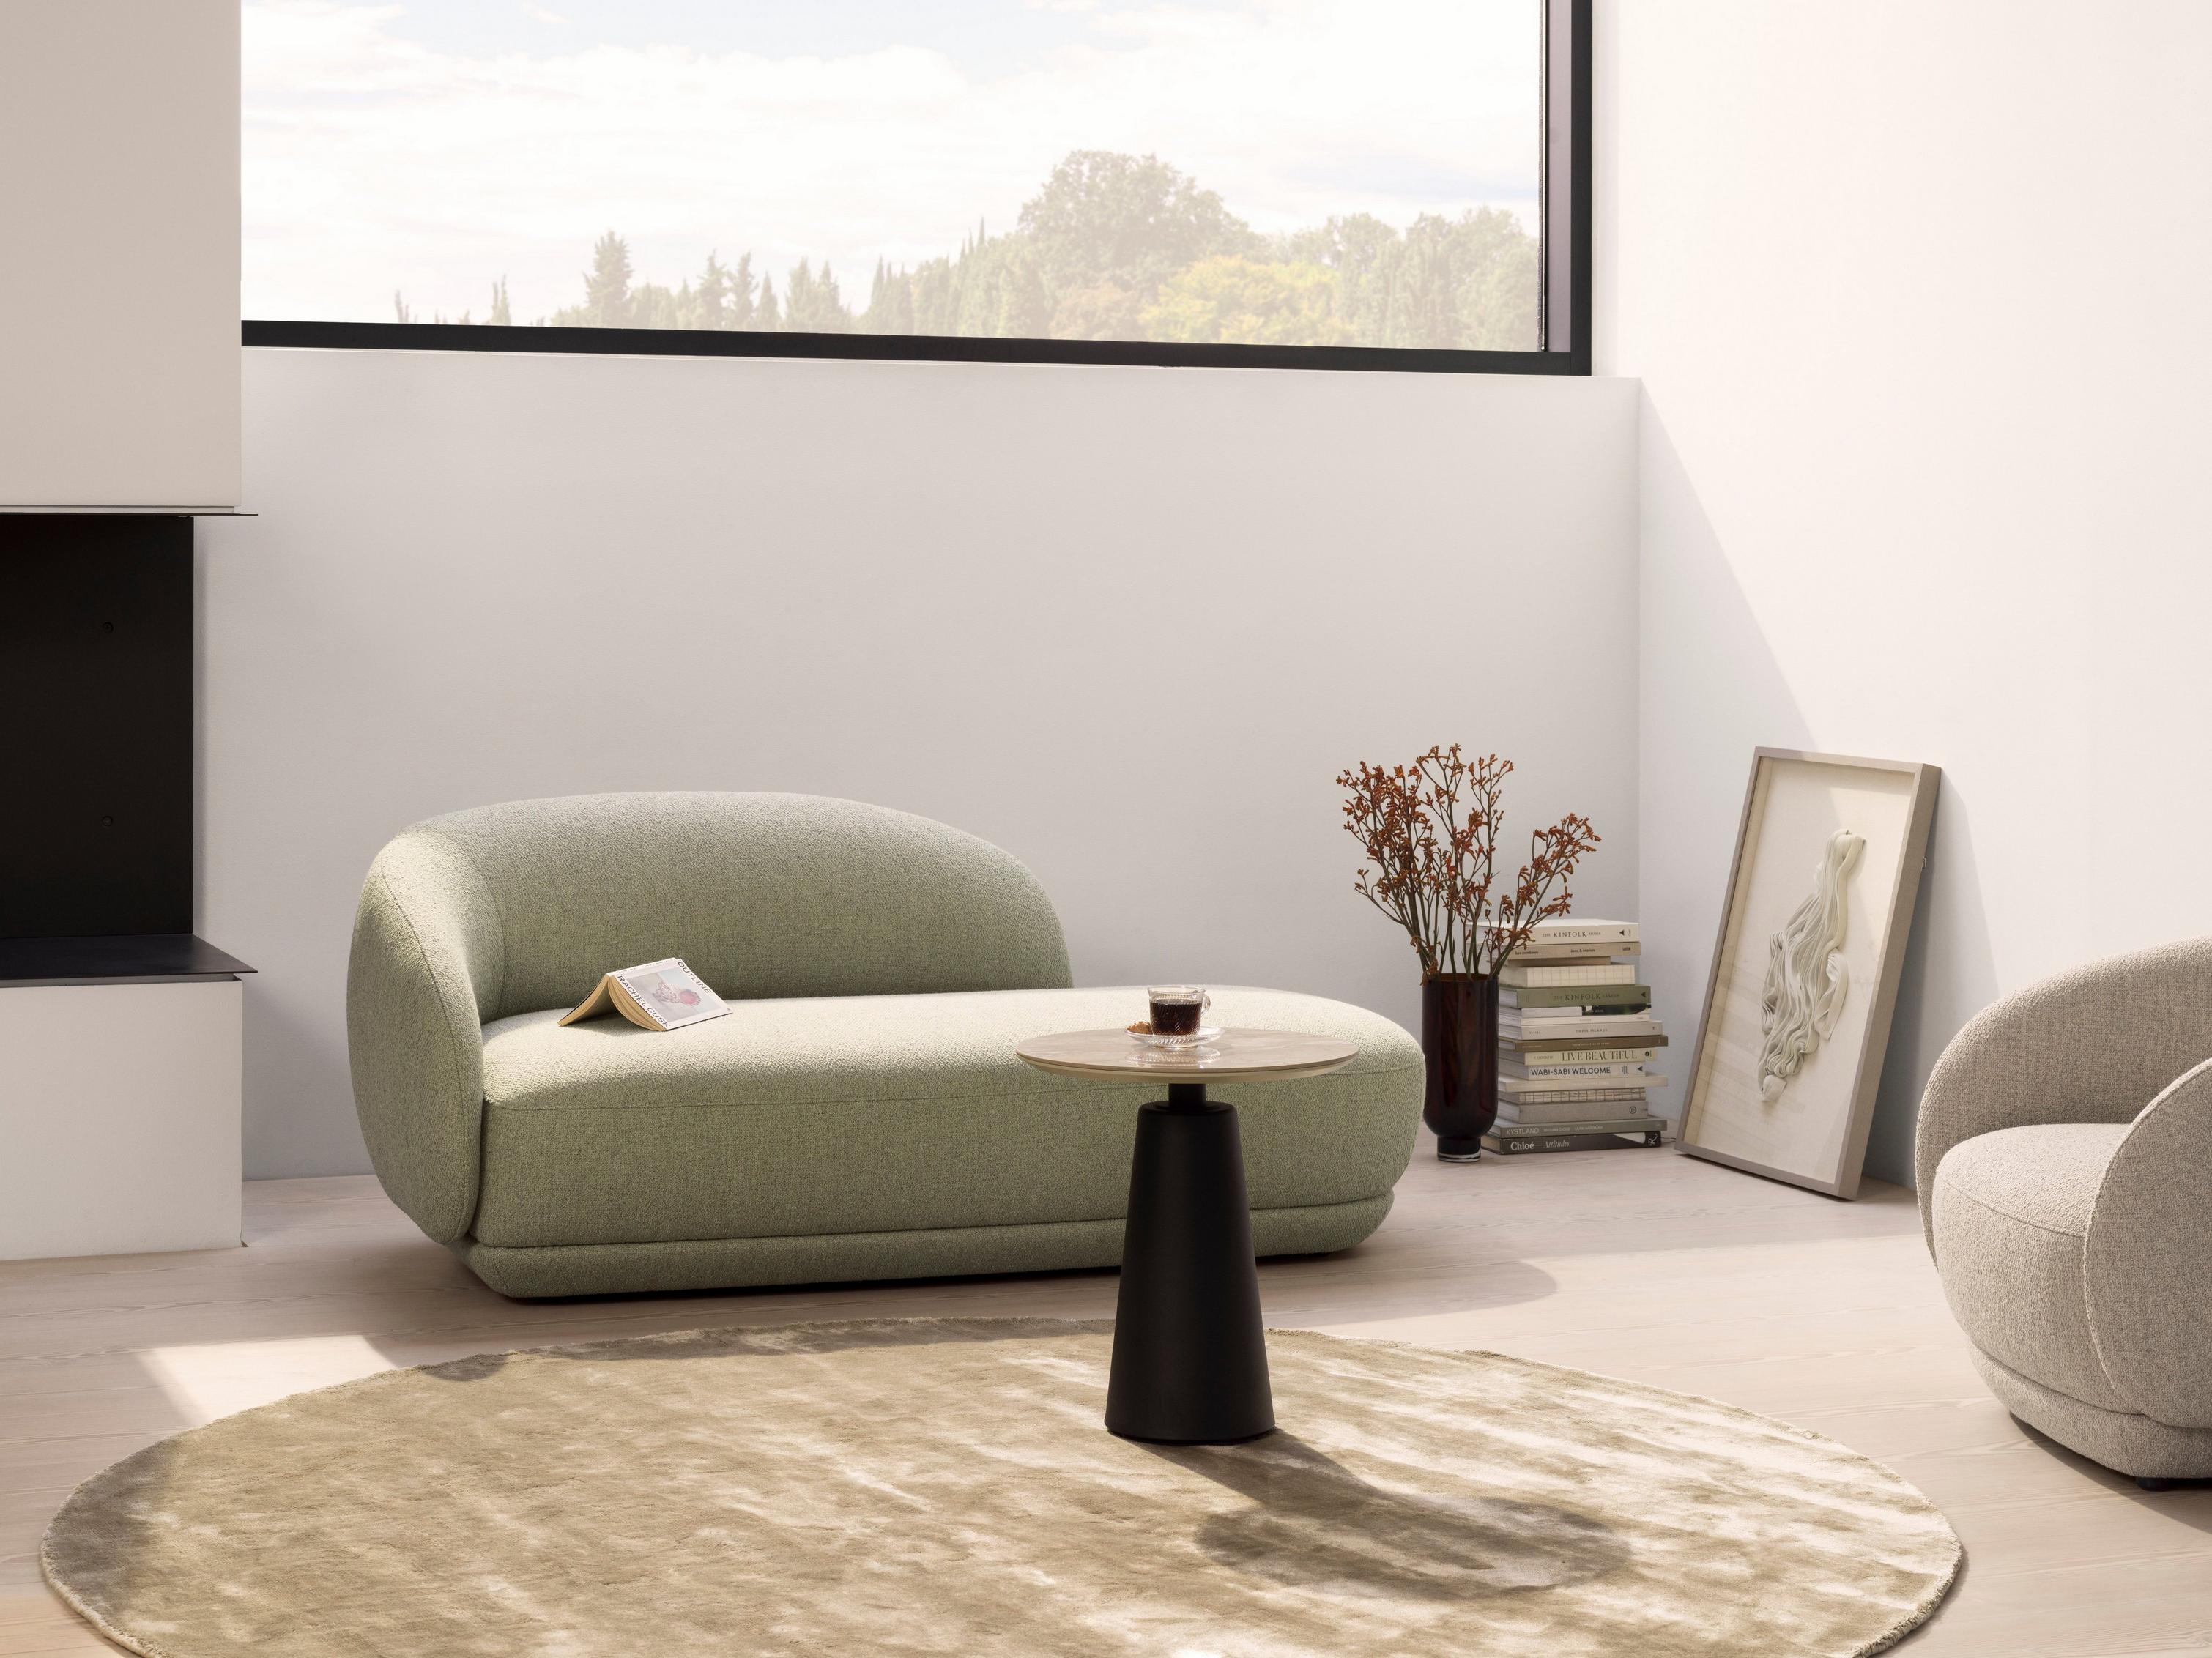 Un salon relaxant avec la chaise longue Bolzano en tissu Lazio vert clair.